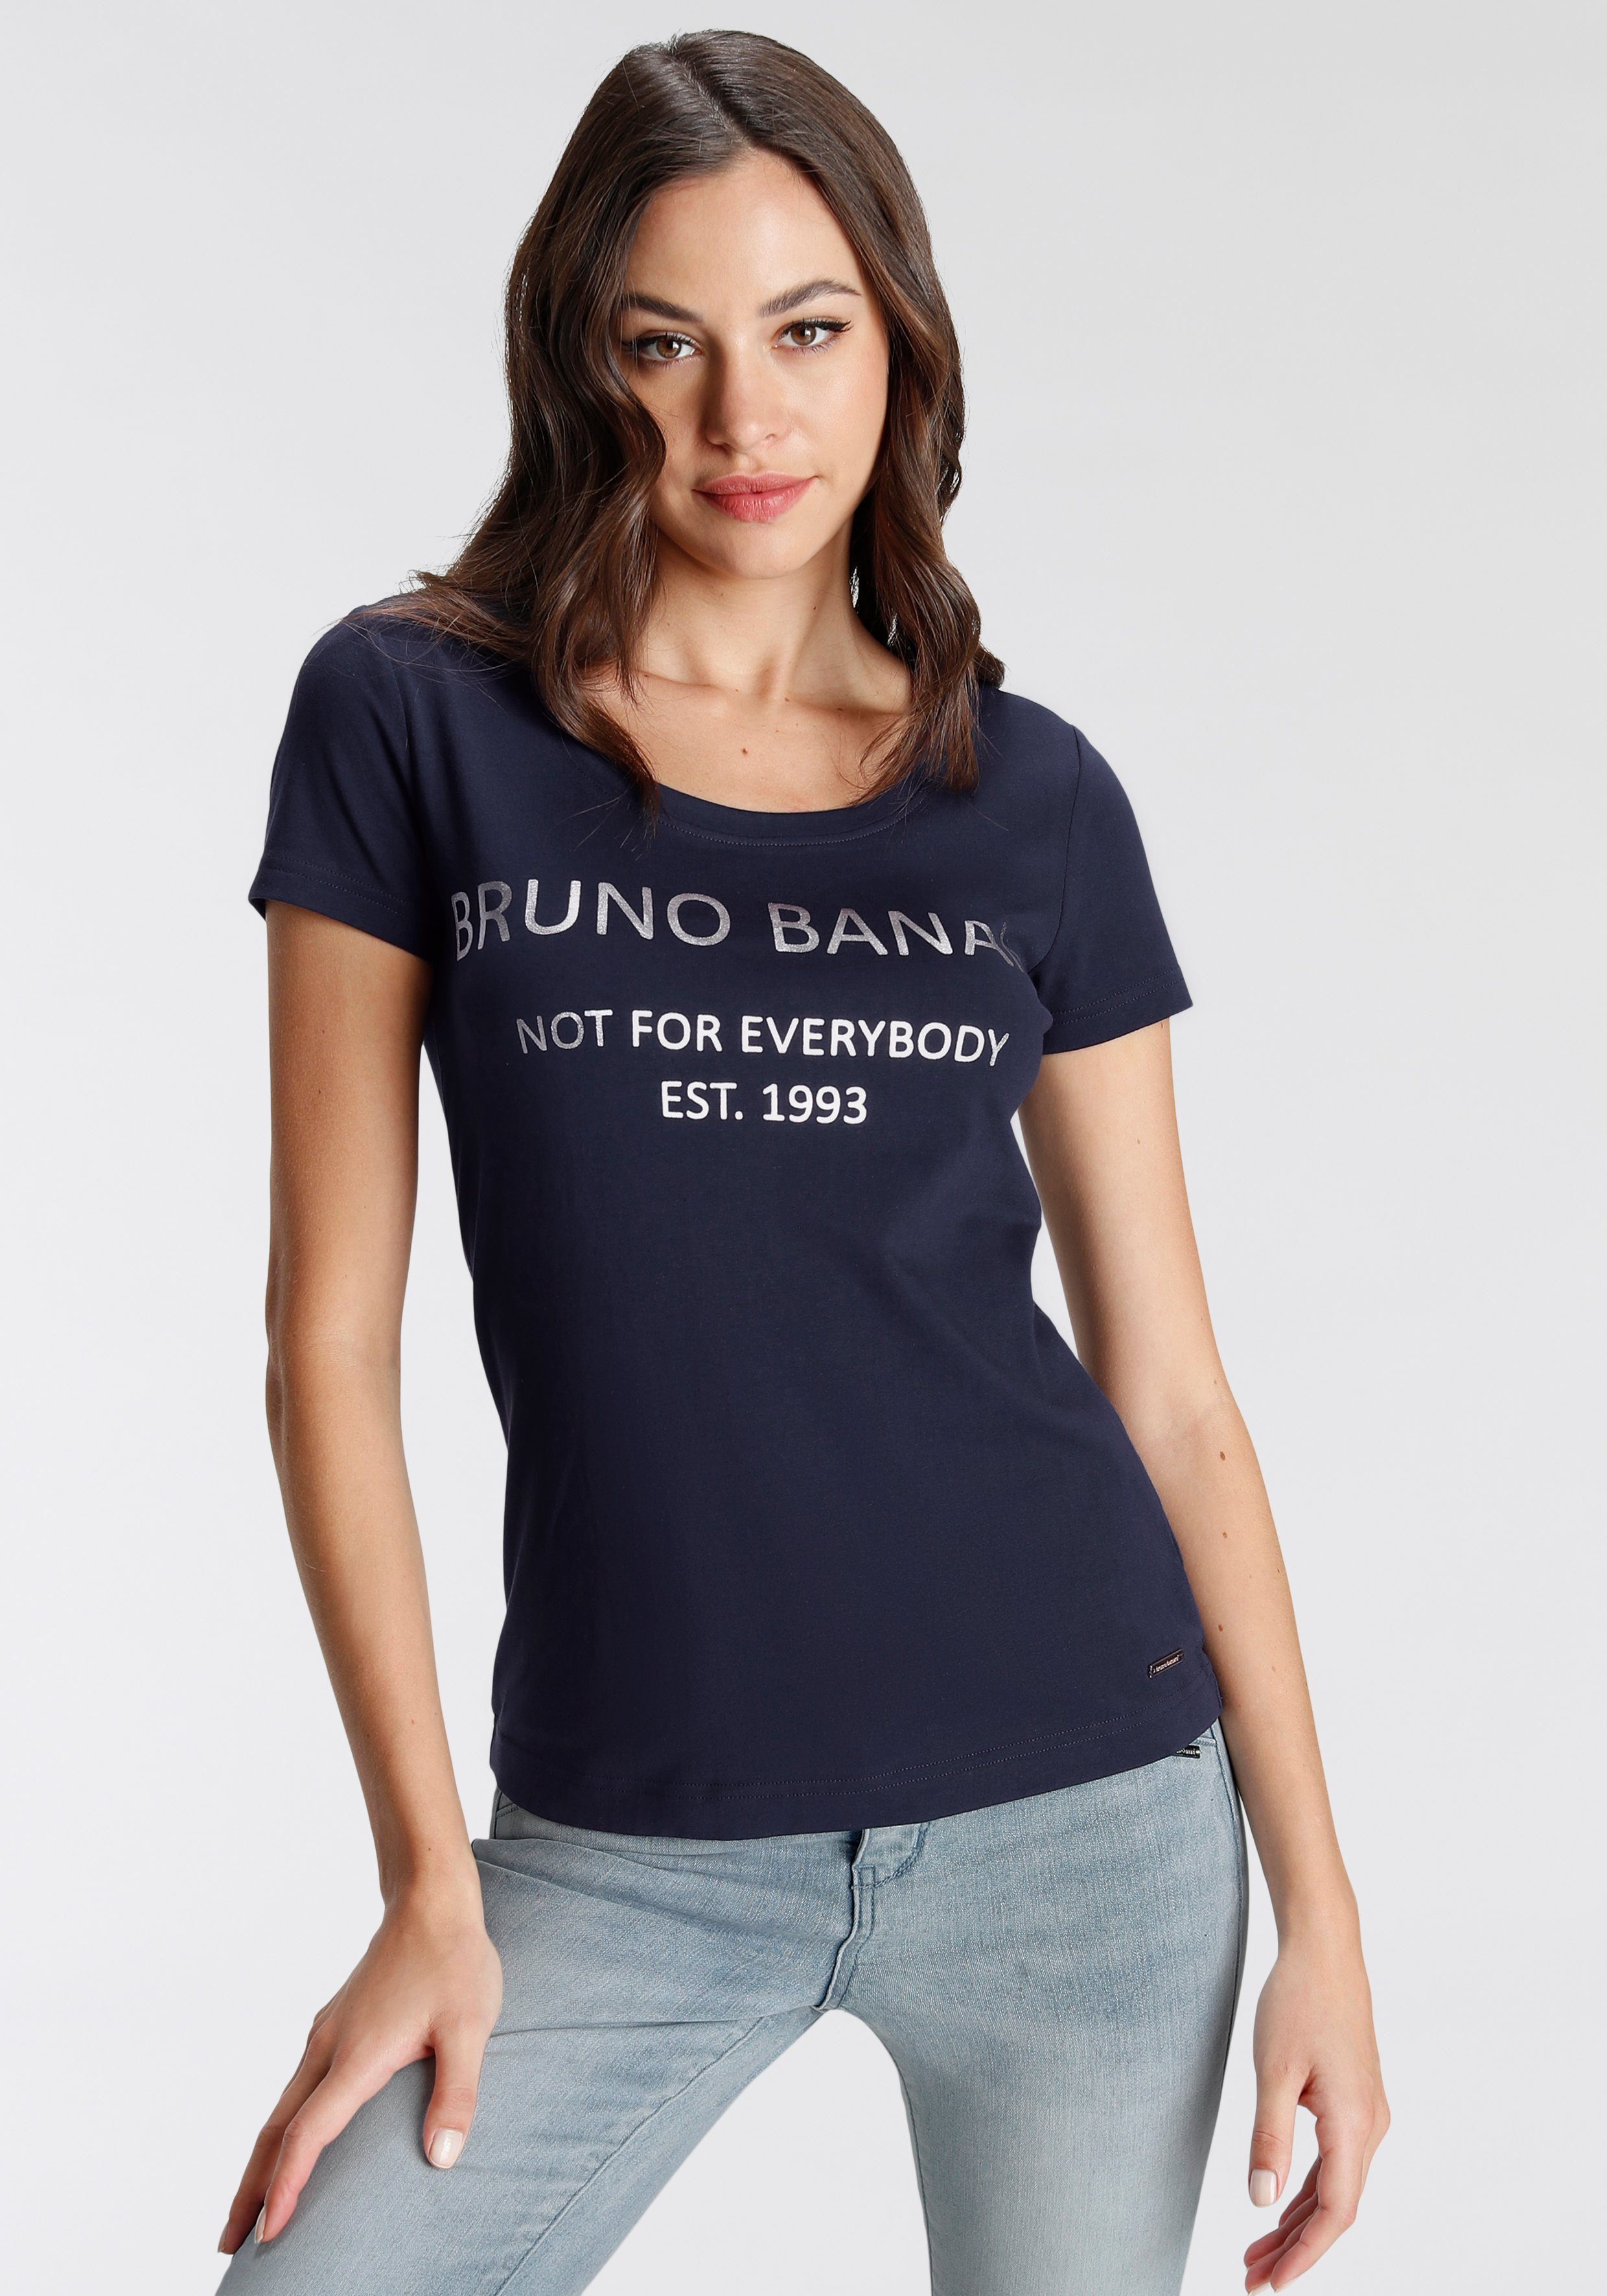 Versandhandelsseite Bruno Banani T-Shirt KOLLEKTION goldfarbenem NEUE Logodruck marine mit